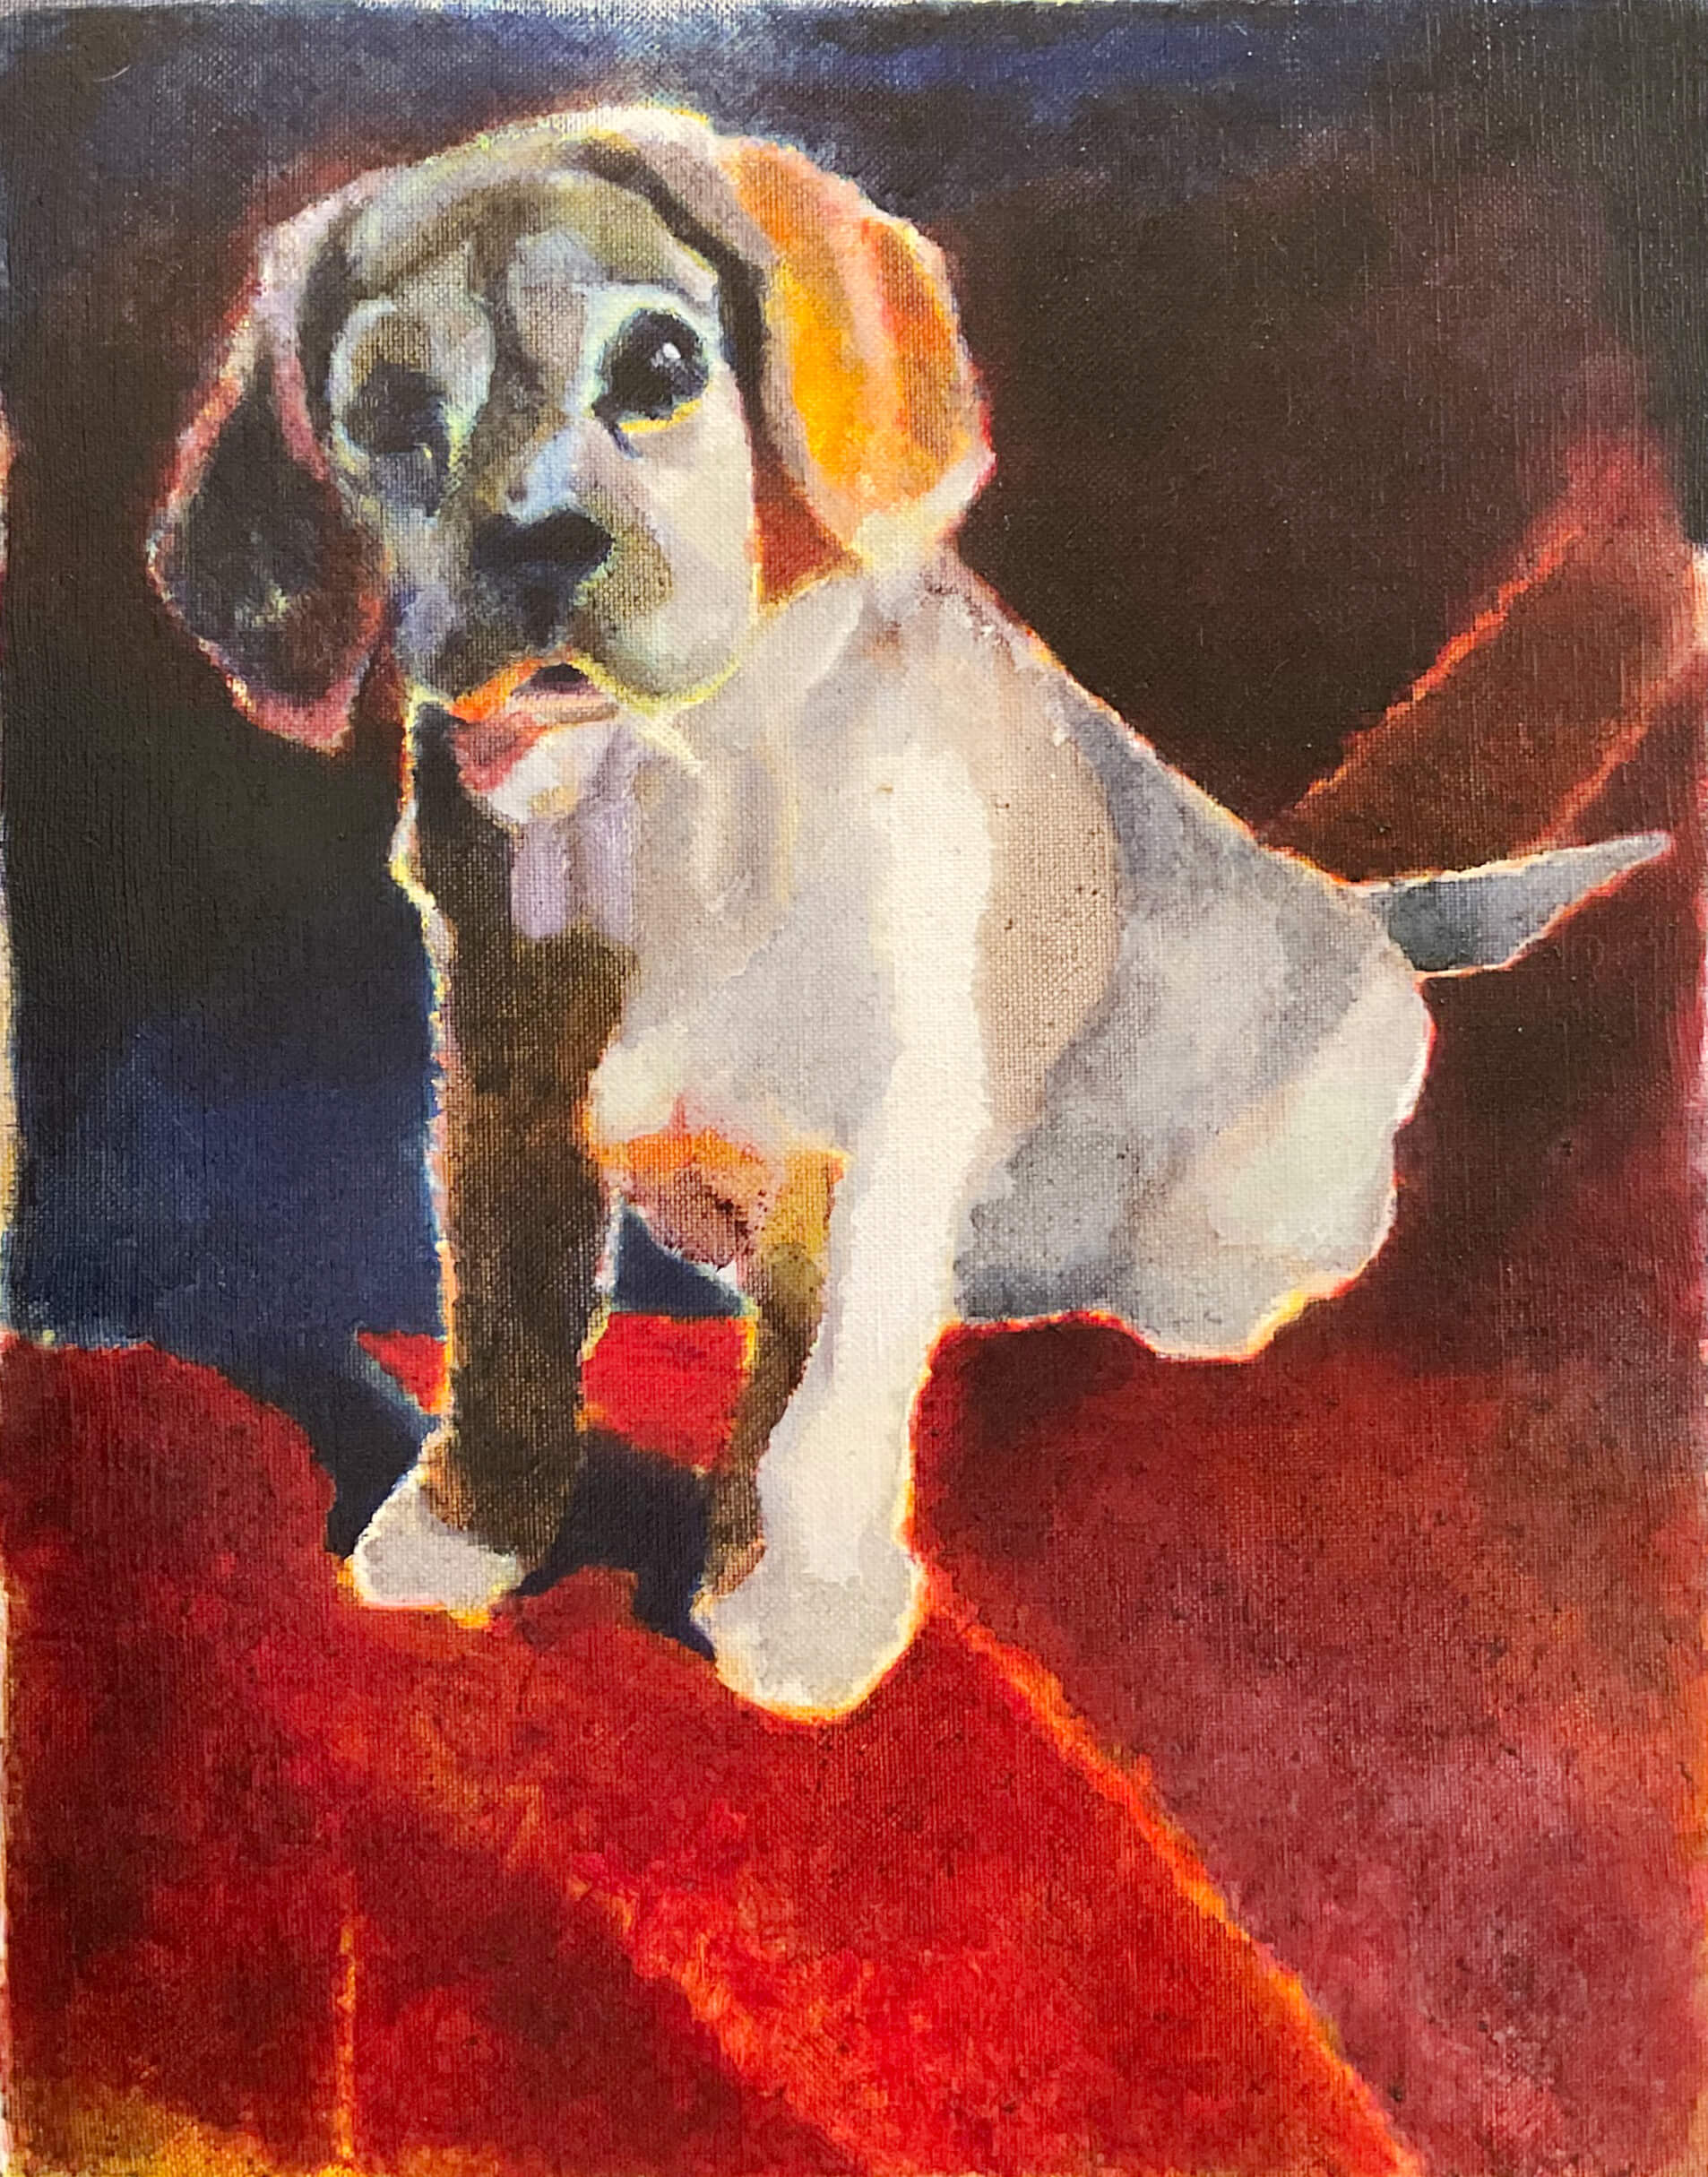 油絵で描いた、ビーグル犬です。タイトルは犬です。2018年制作、サイズが530×455ミリです。